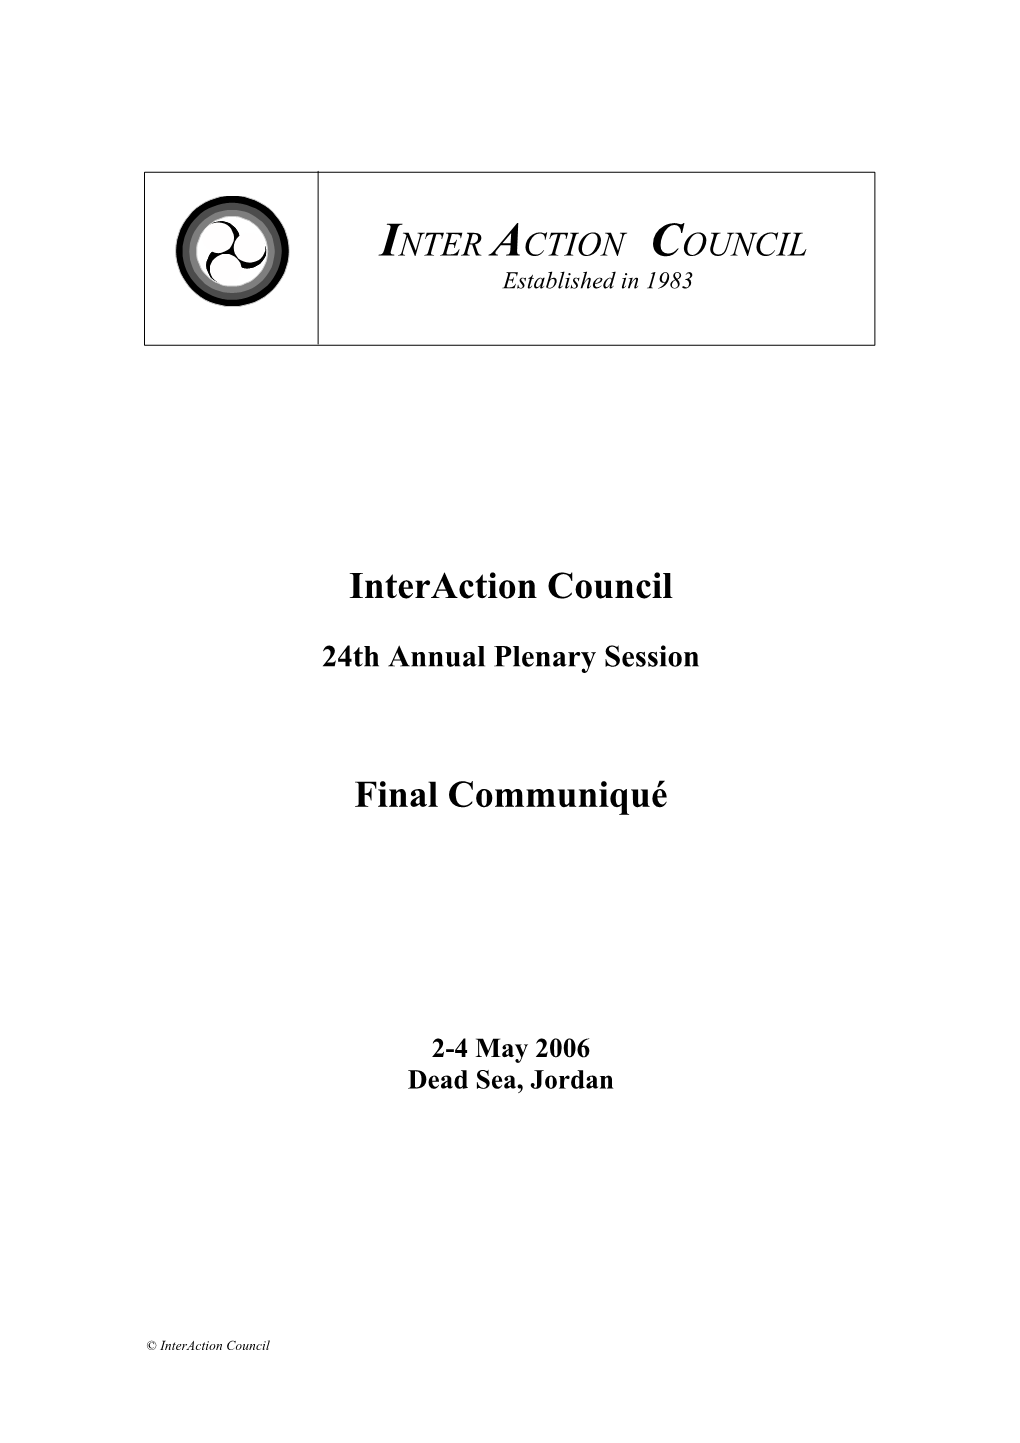 Interaction Council Final Communiqué